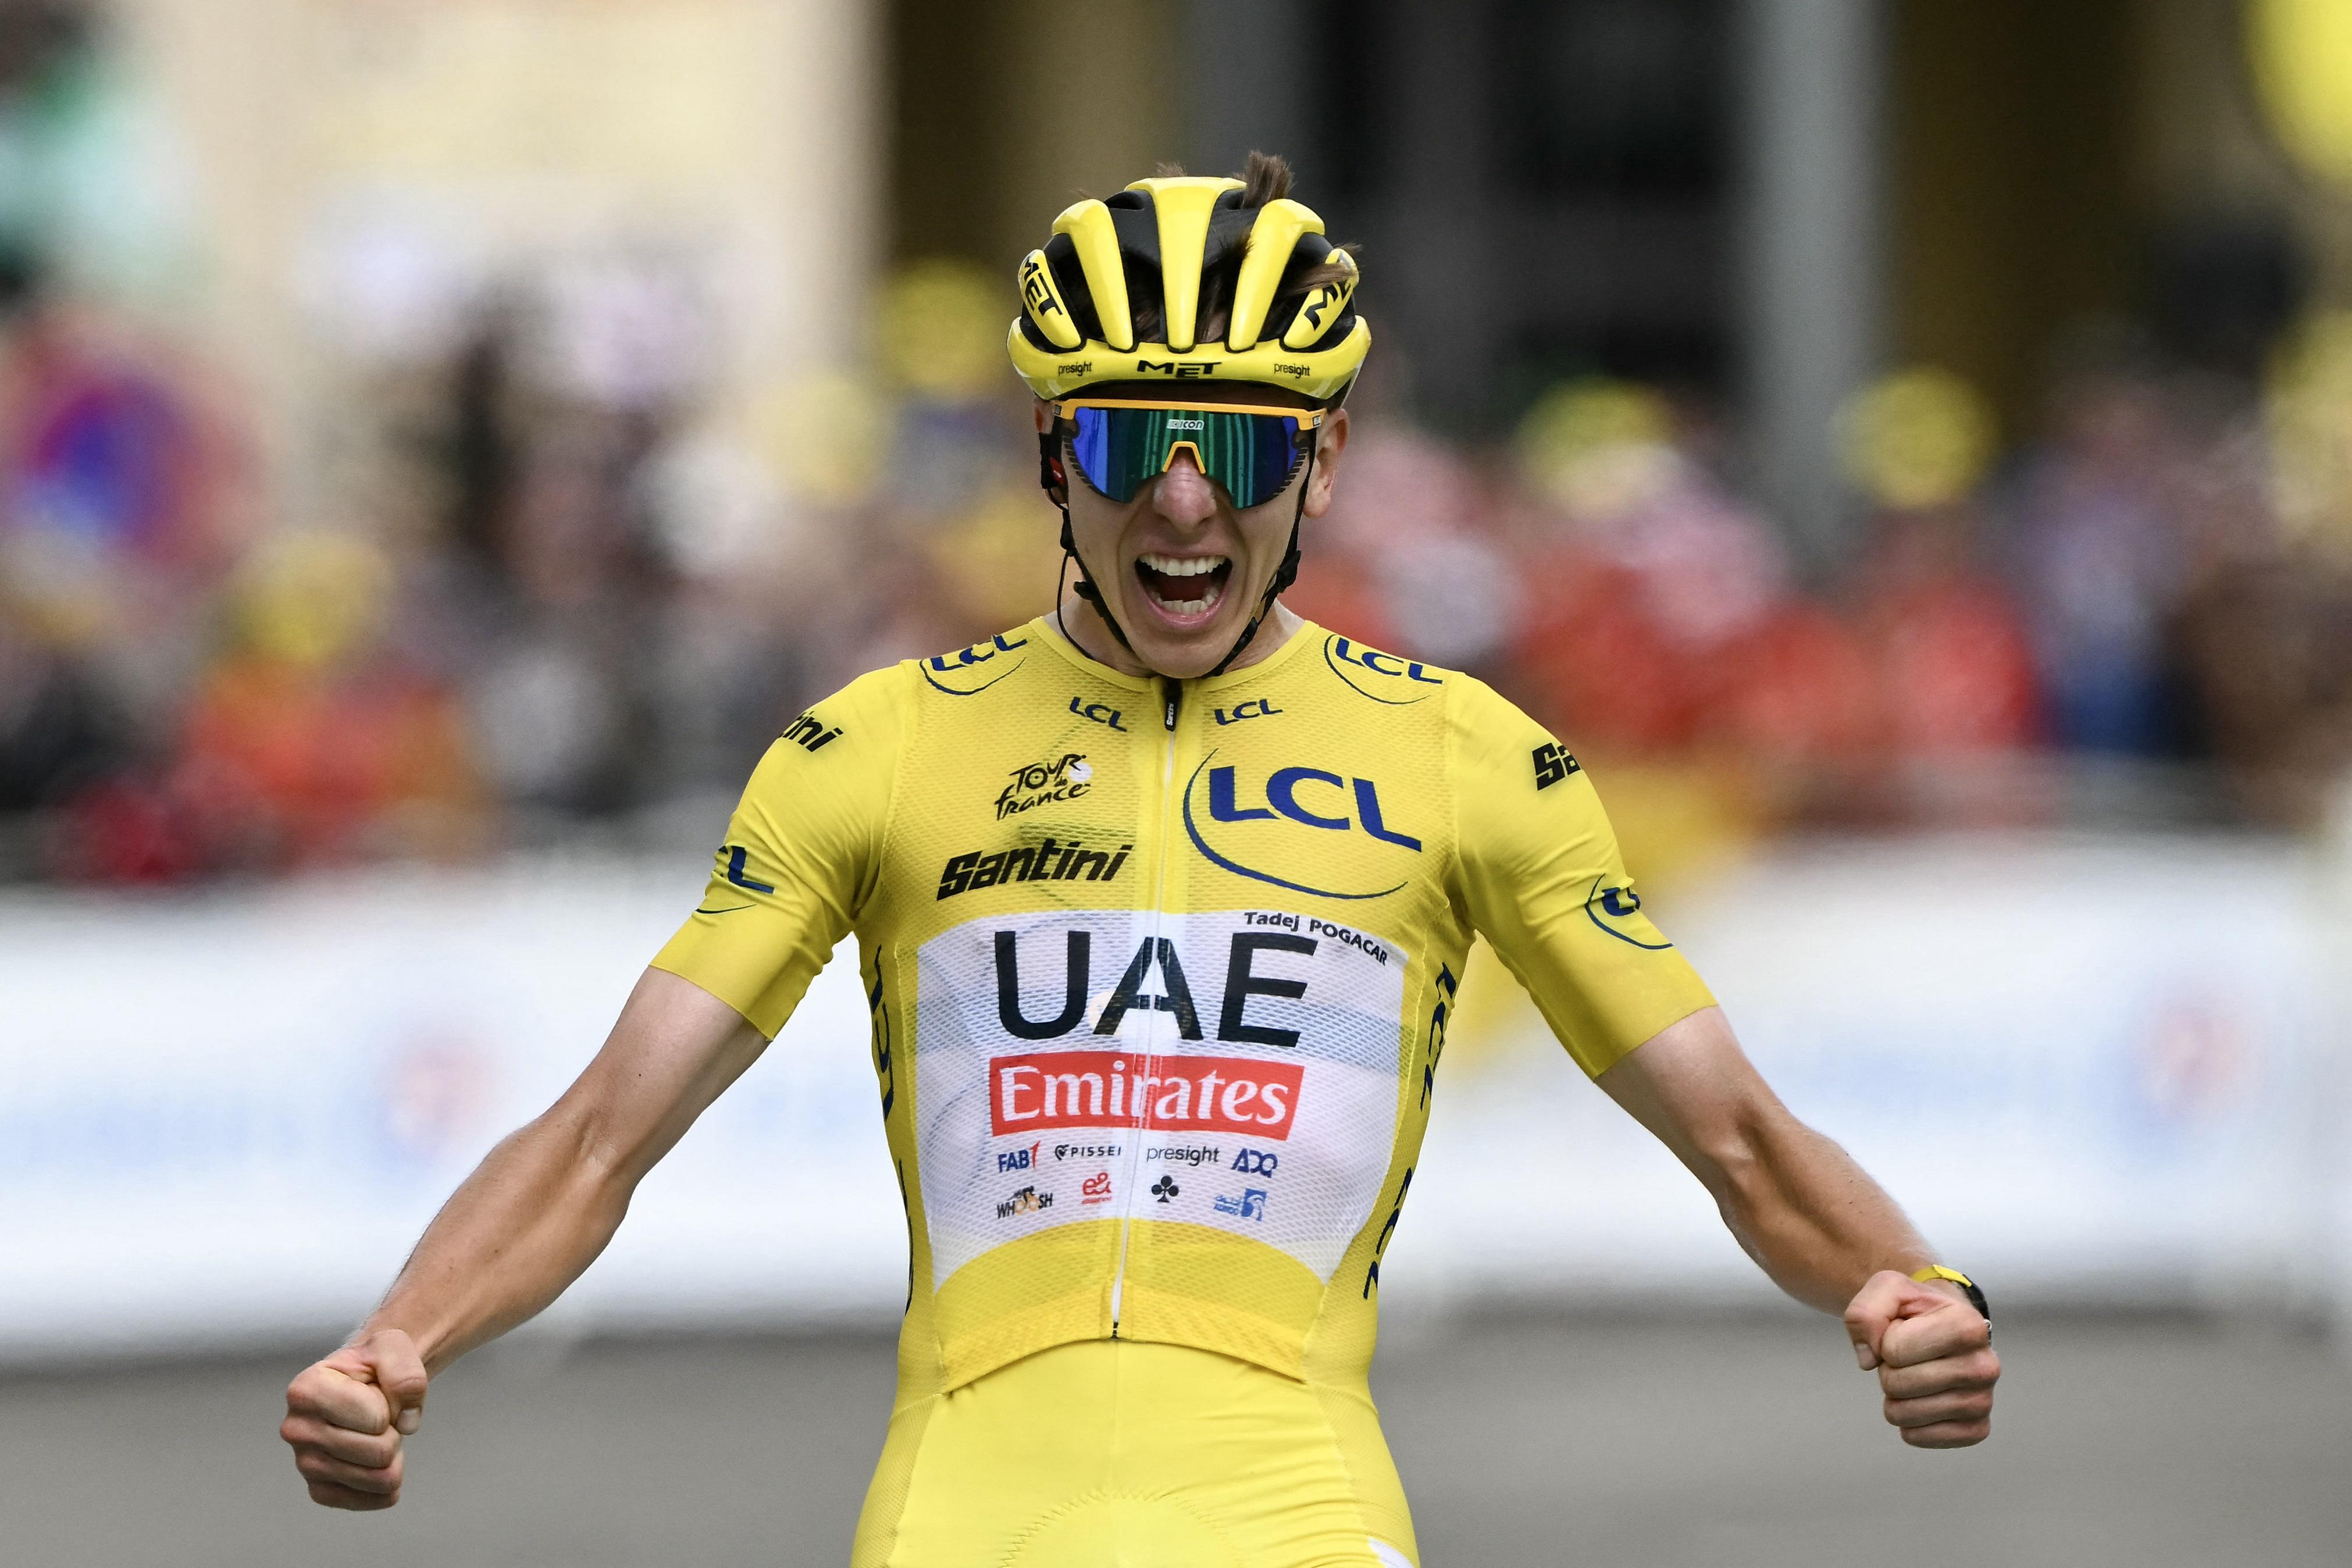 Tour de France - Pogacar vince 14esima tappa: show della maglia gialla